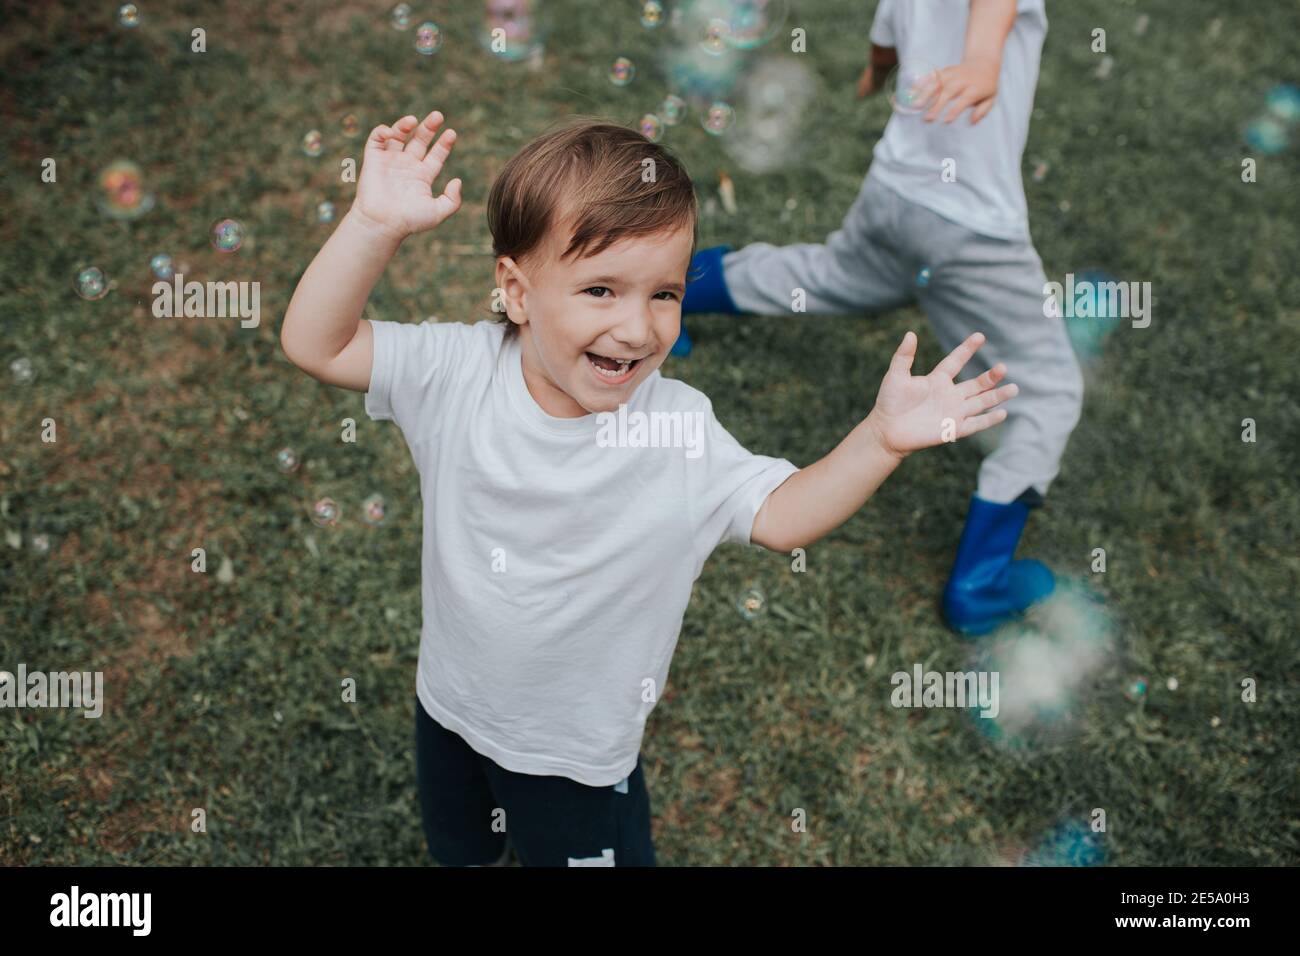 Ragazzo allegro che corre dopo bolle di sapone. Bambino felice inseguire bolle di sapone fuori in un giardino in una giornata estiva. Foto Stock